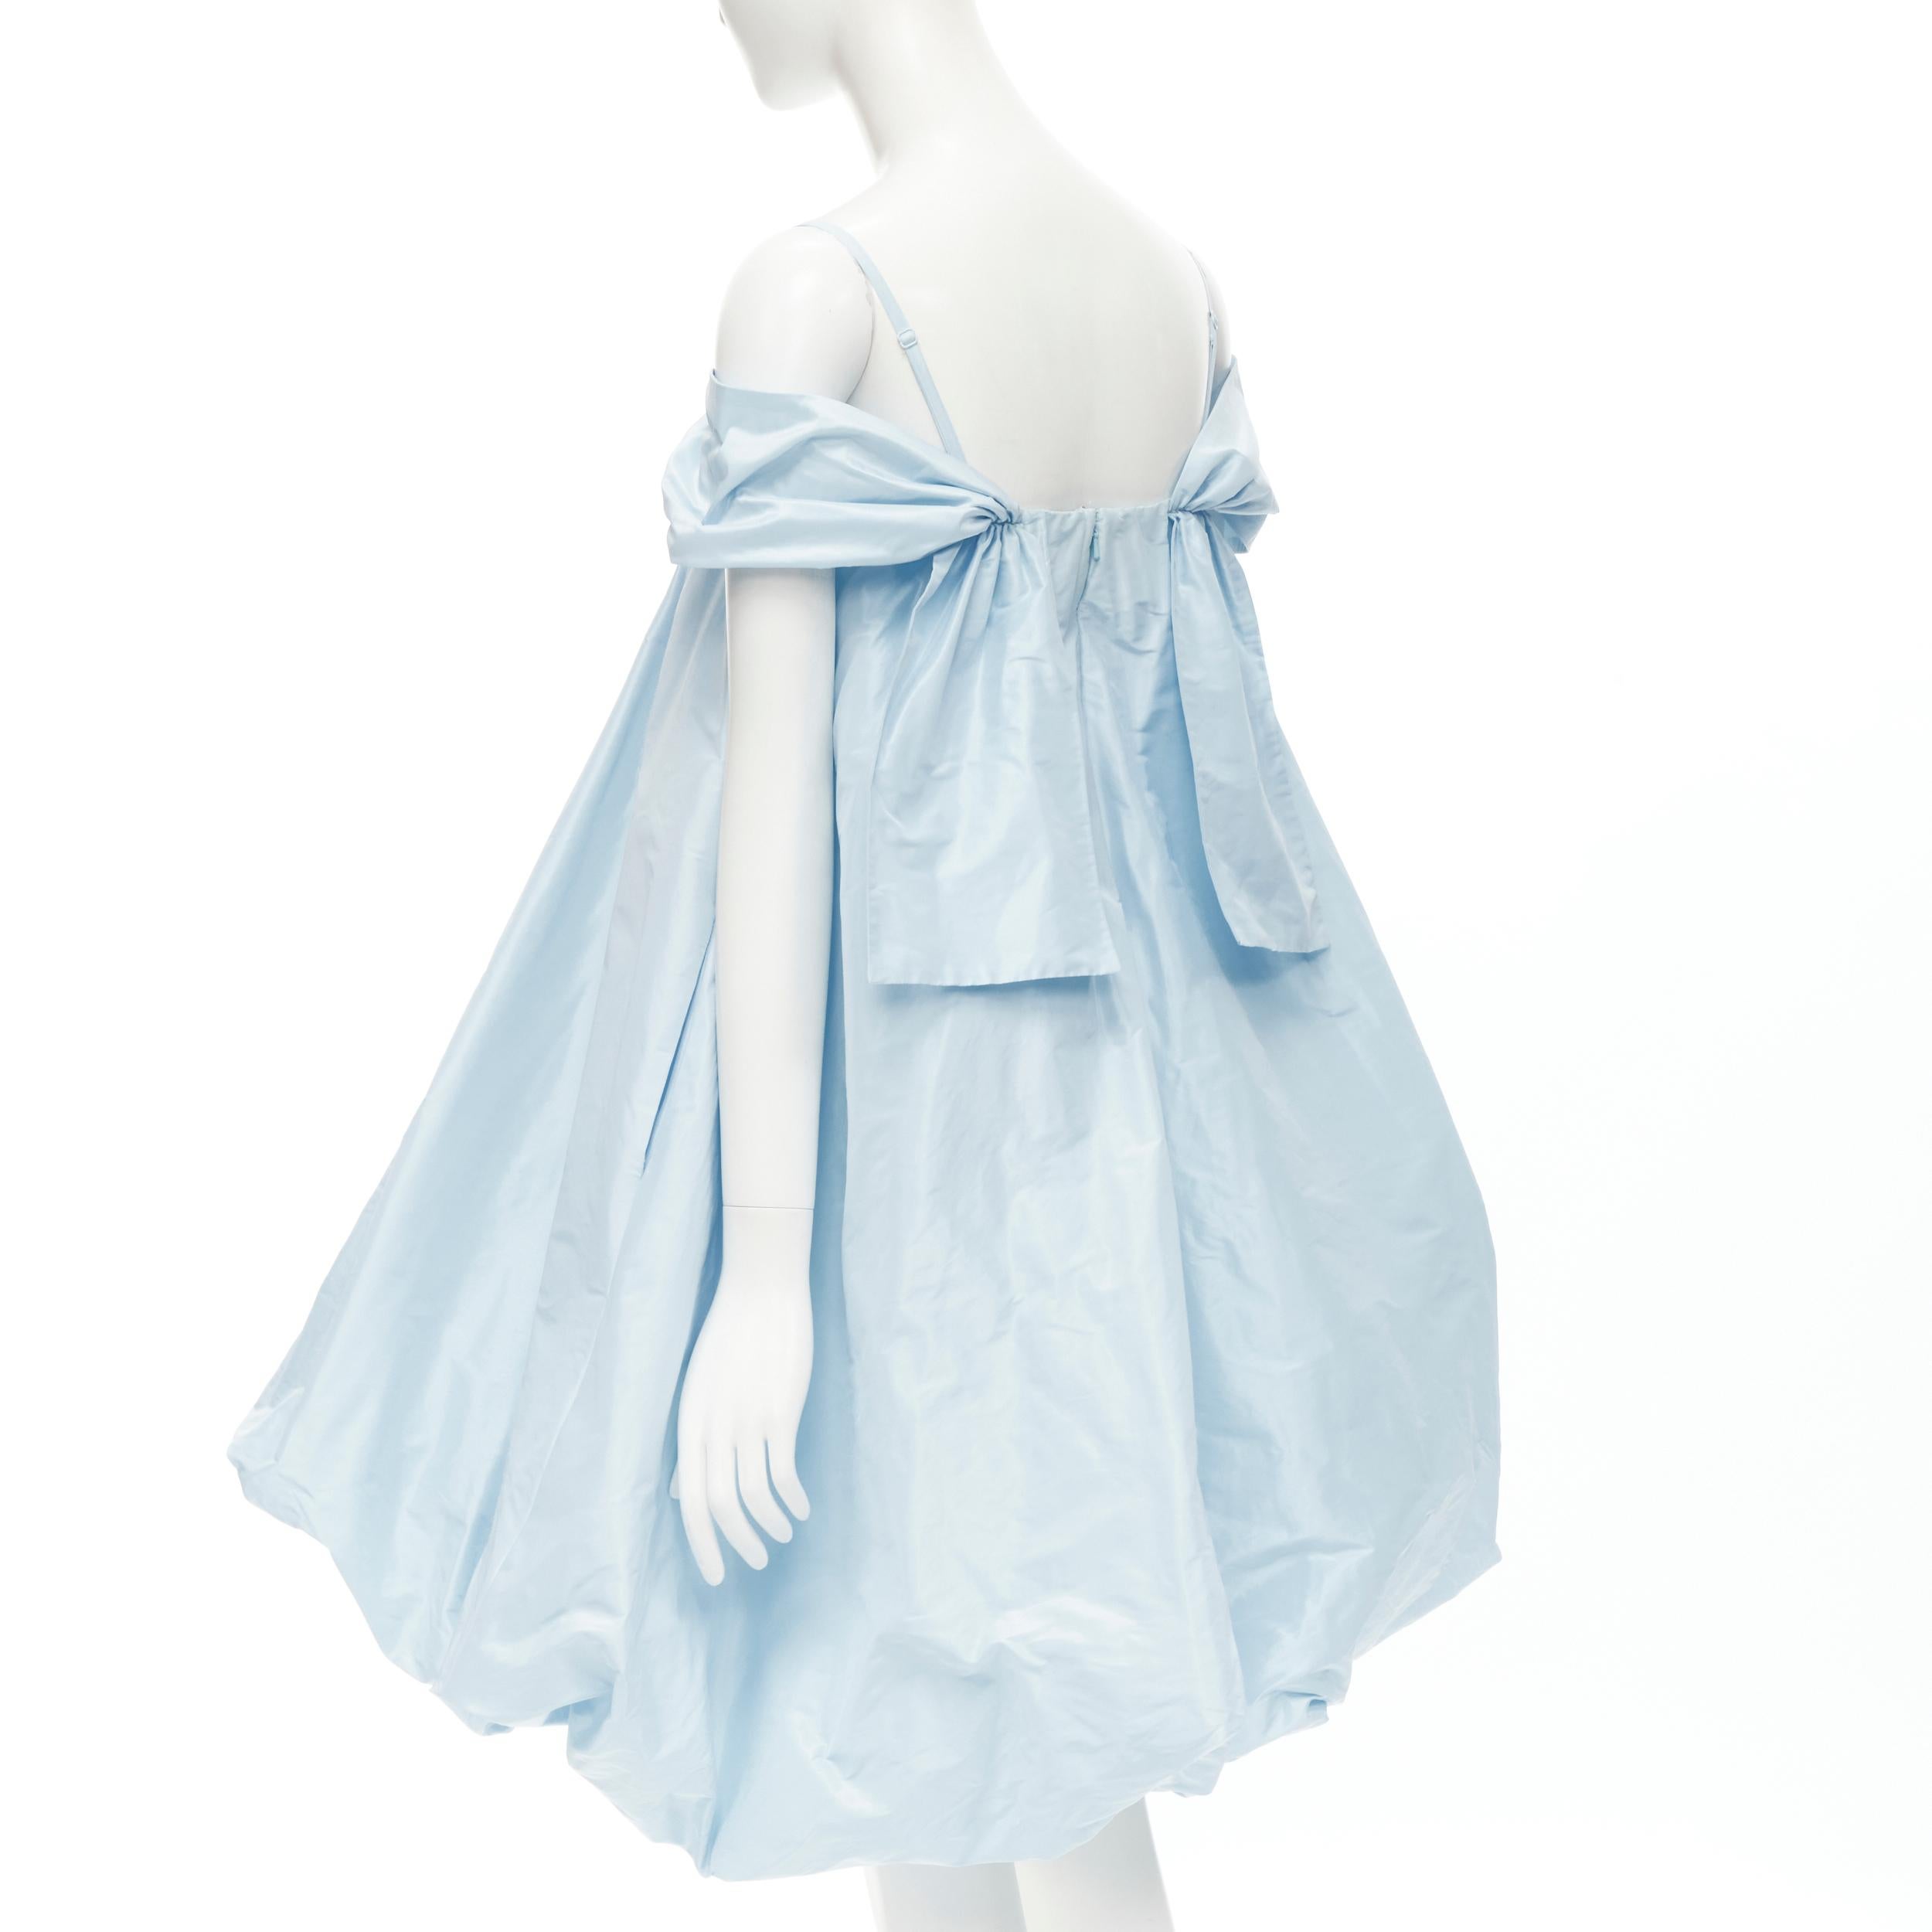 Gray SIMONE ROCHA light blue polyester voluminous bubble puffball skirt dress UK8 S